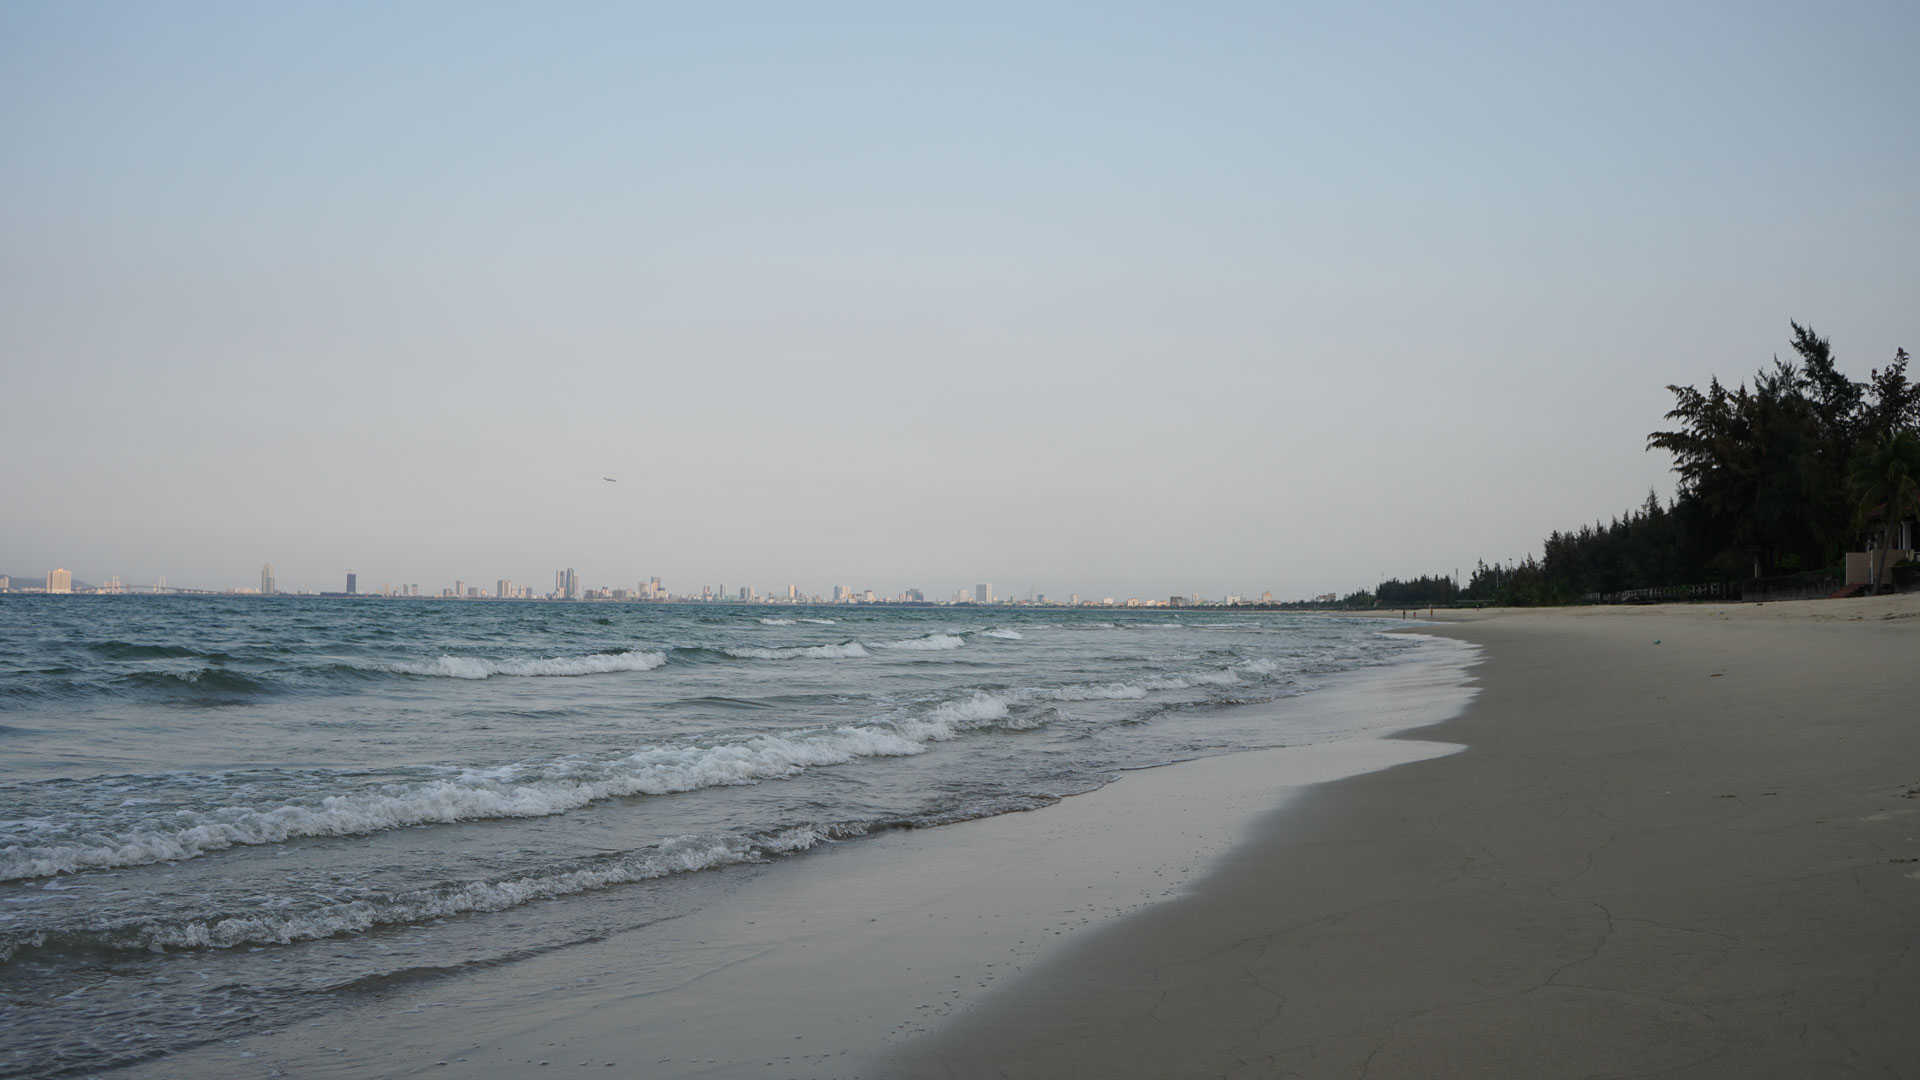 Da Nang Beach